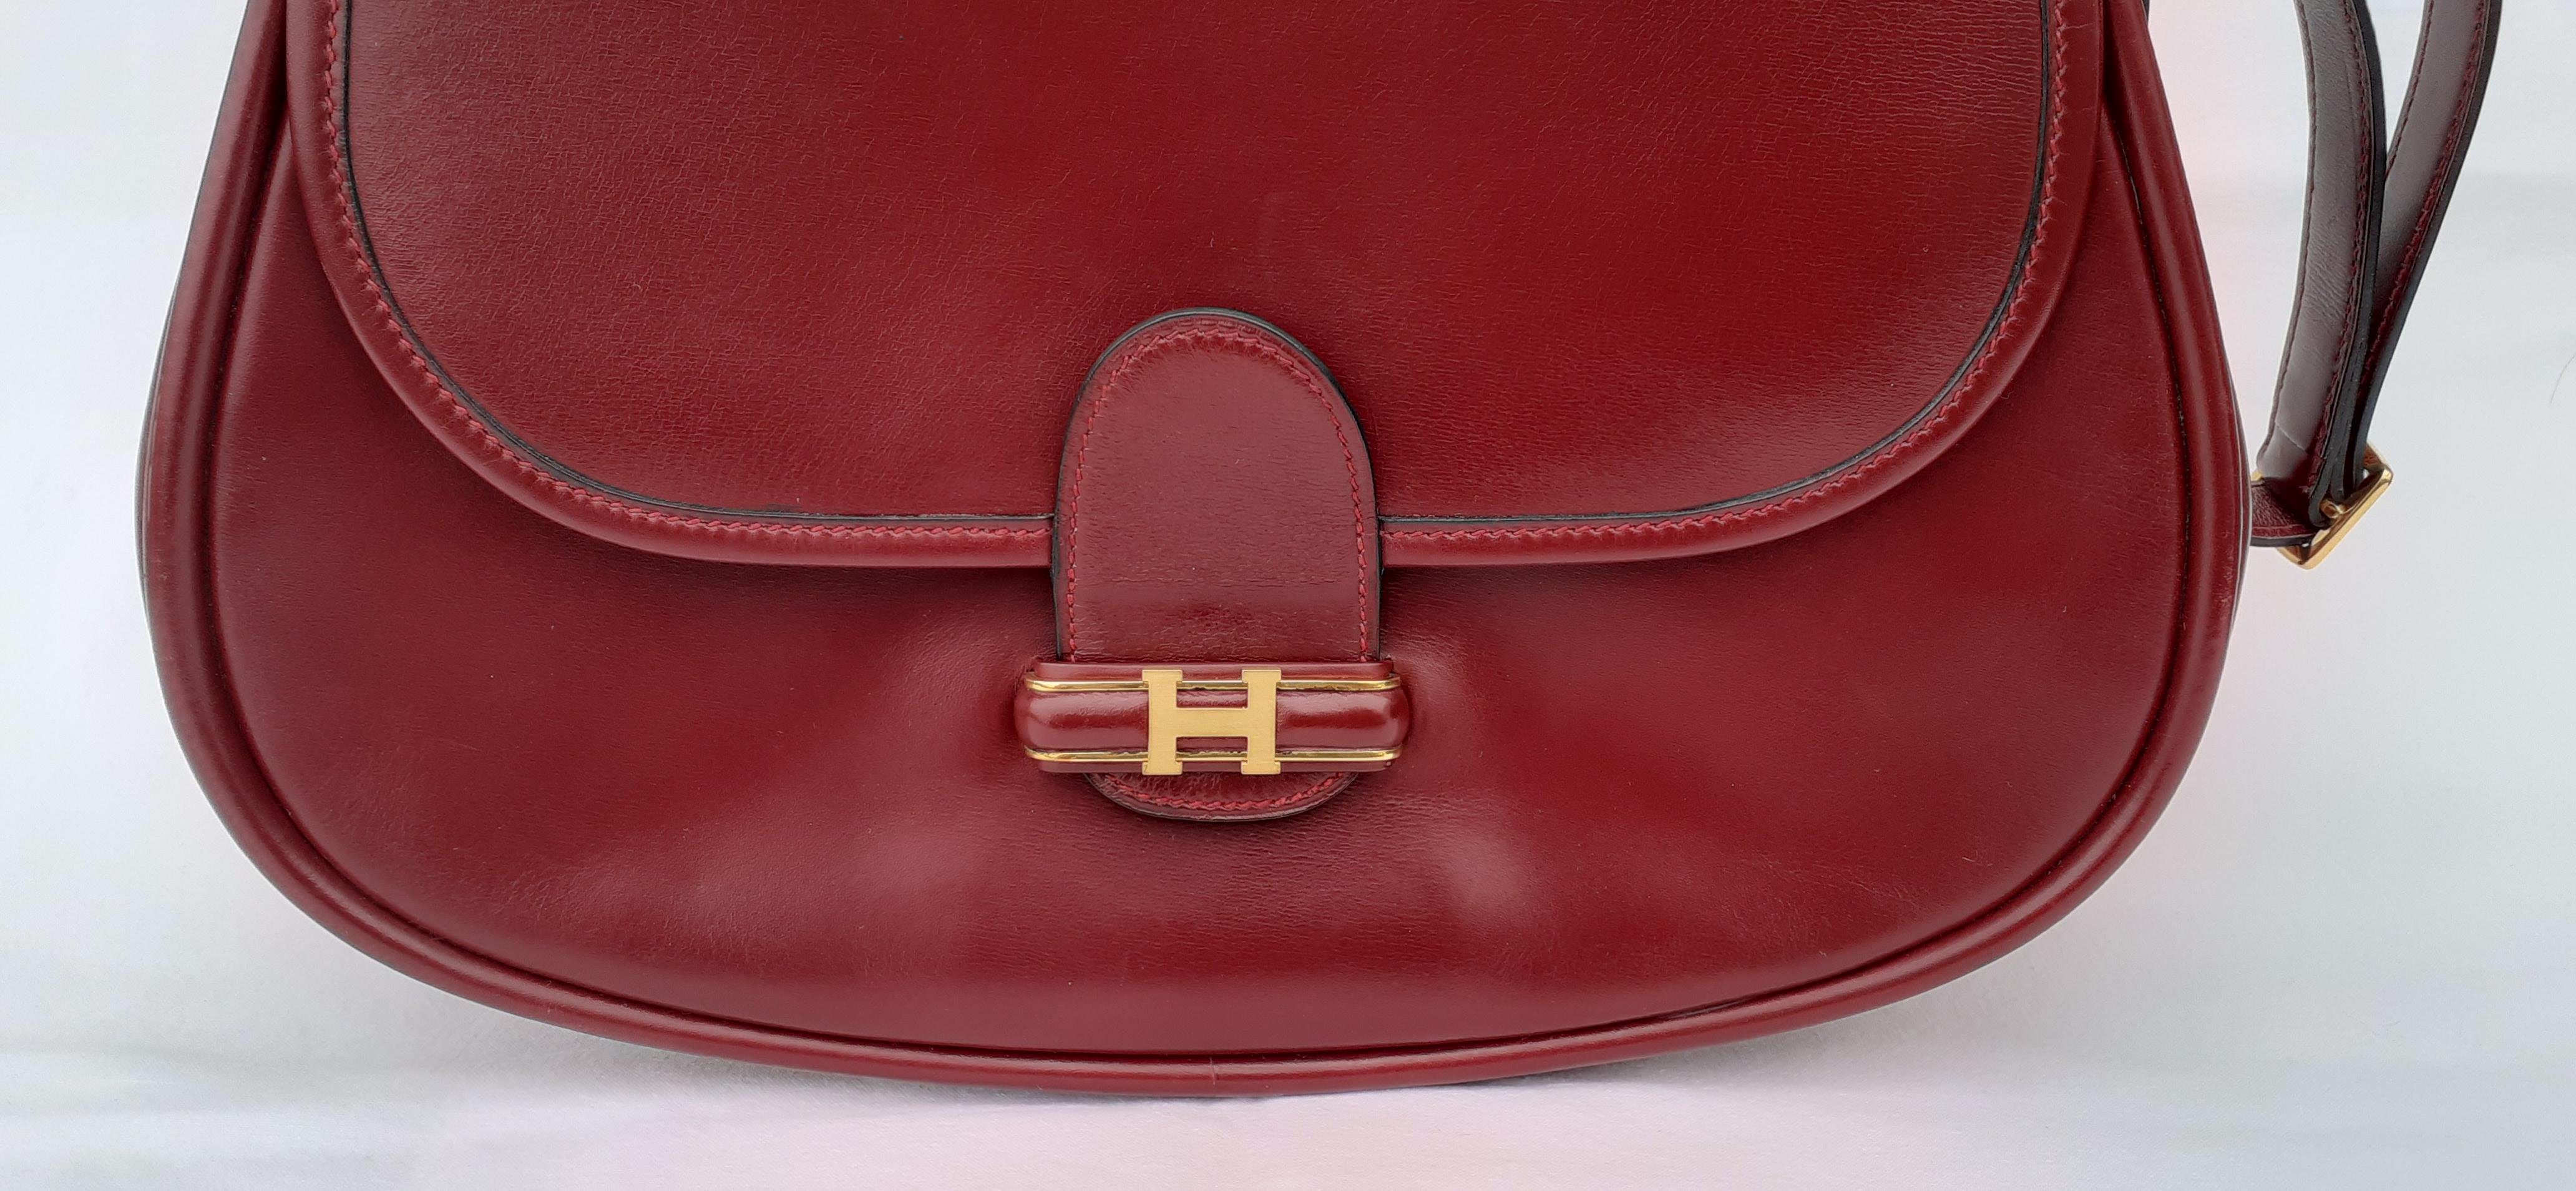 Magnifique et rare sac Hermès authentique

